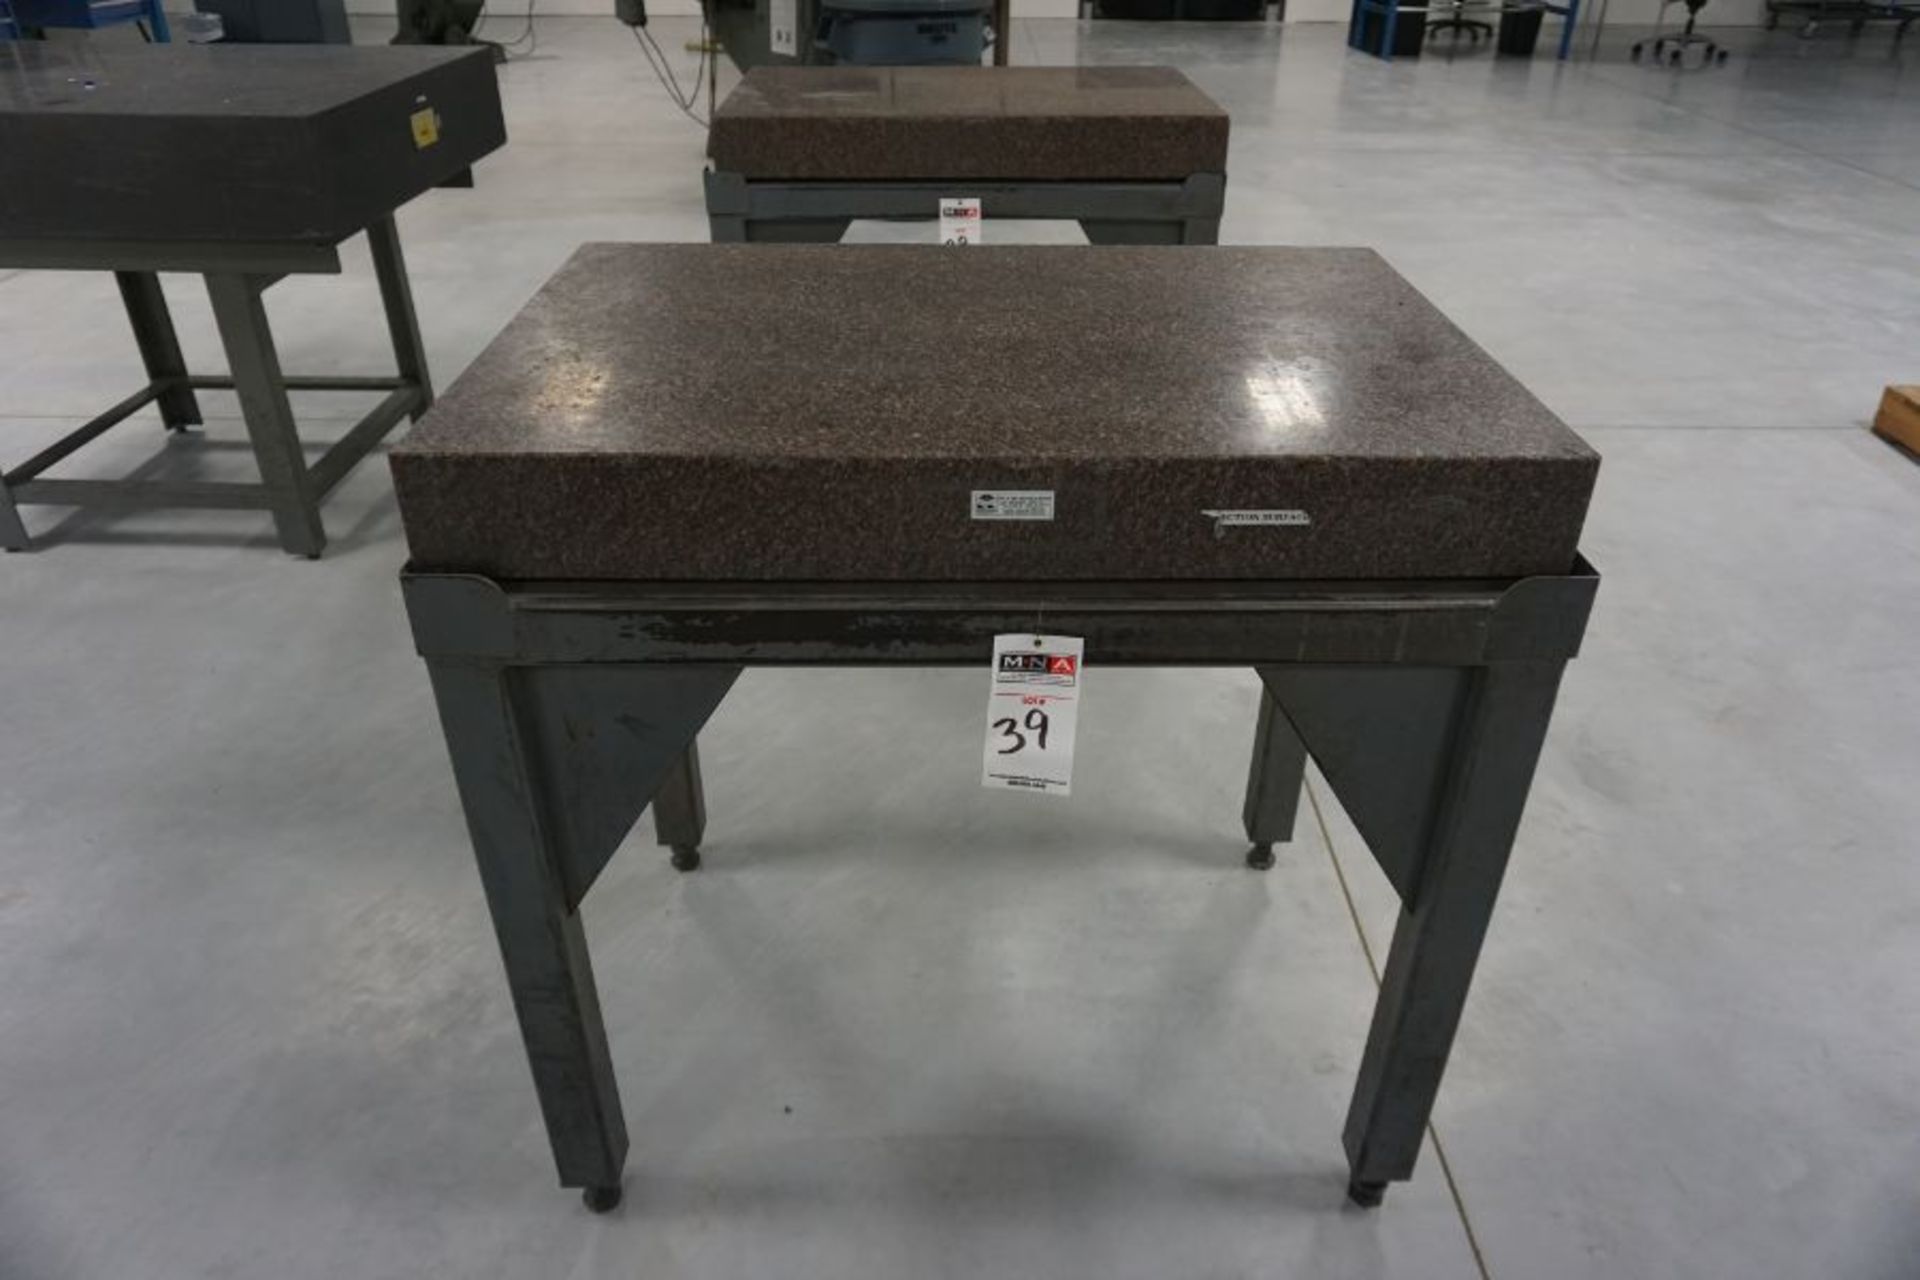 Tru-Stone 24" x 36" Granite Surface Plate